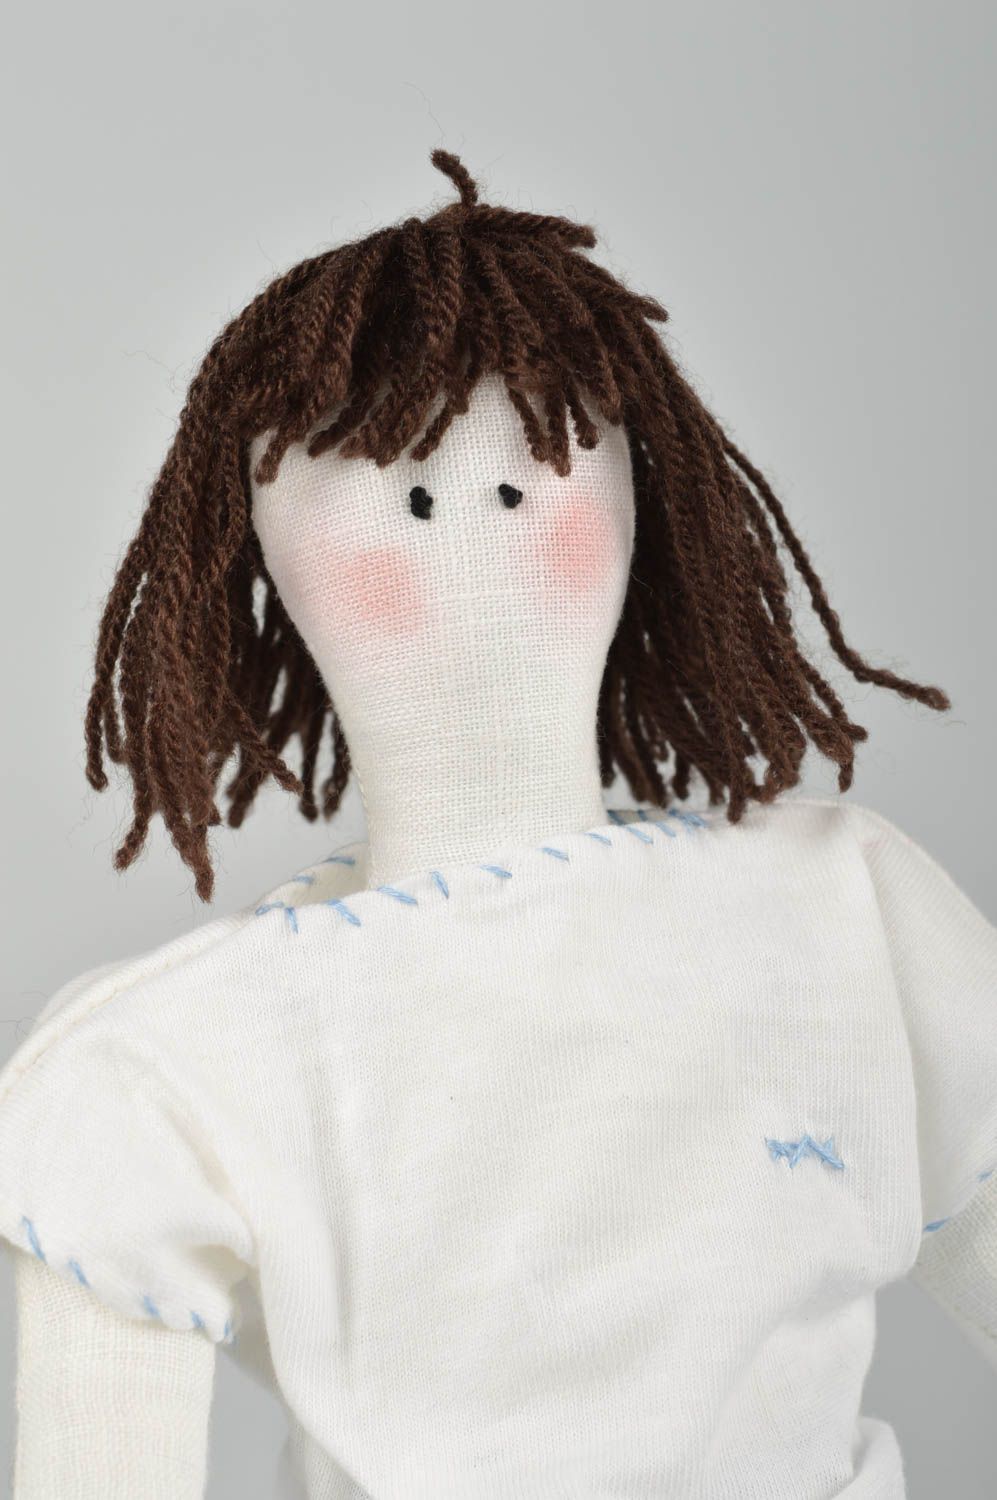 Handmade doll designer doll for girls unusual gift for baby nursery decor photo 4